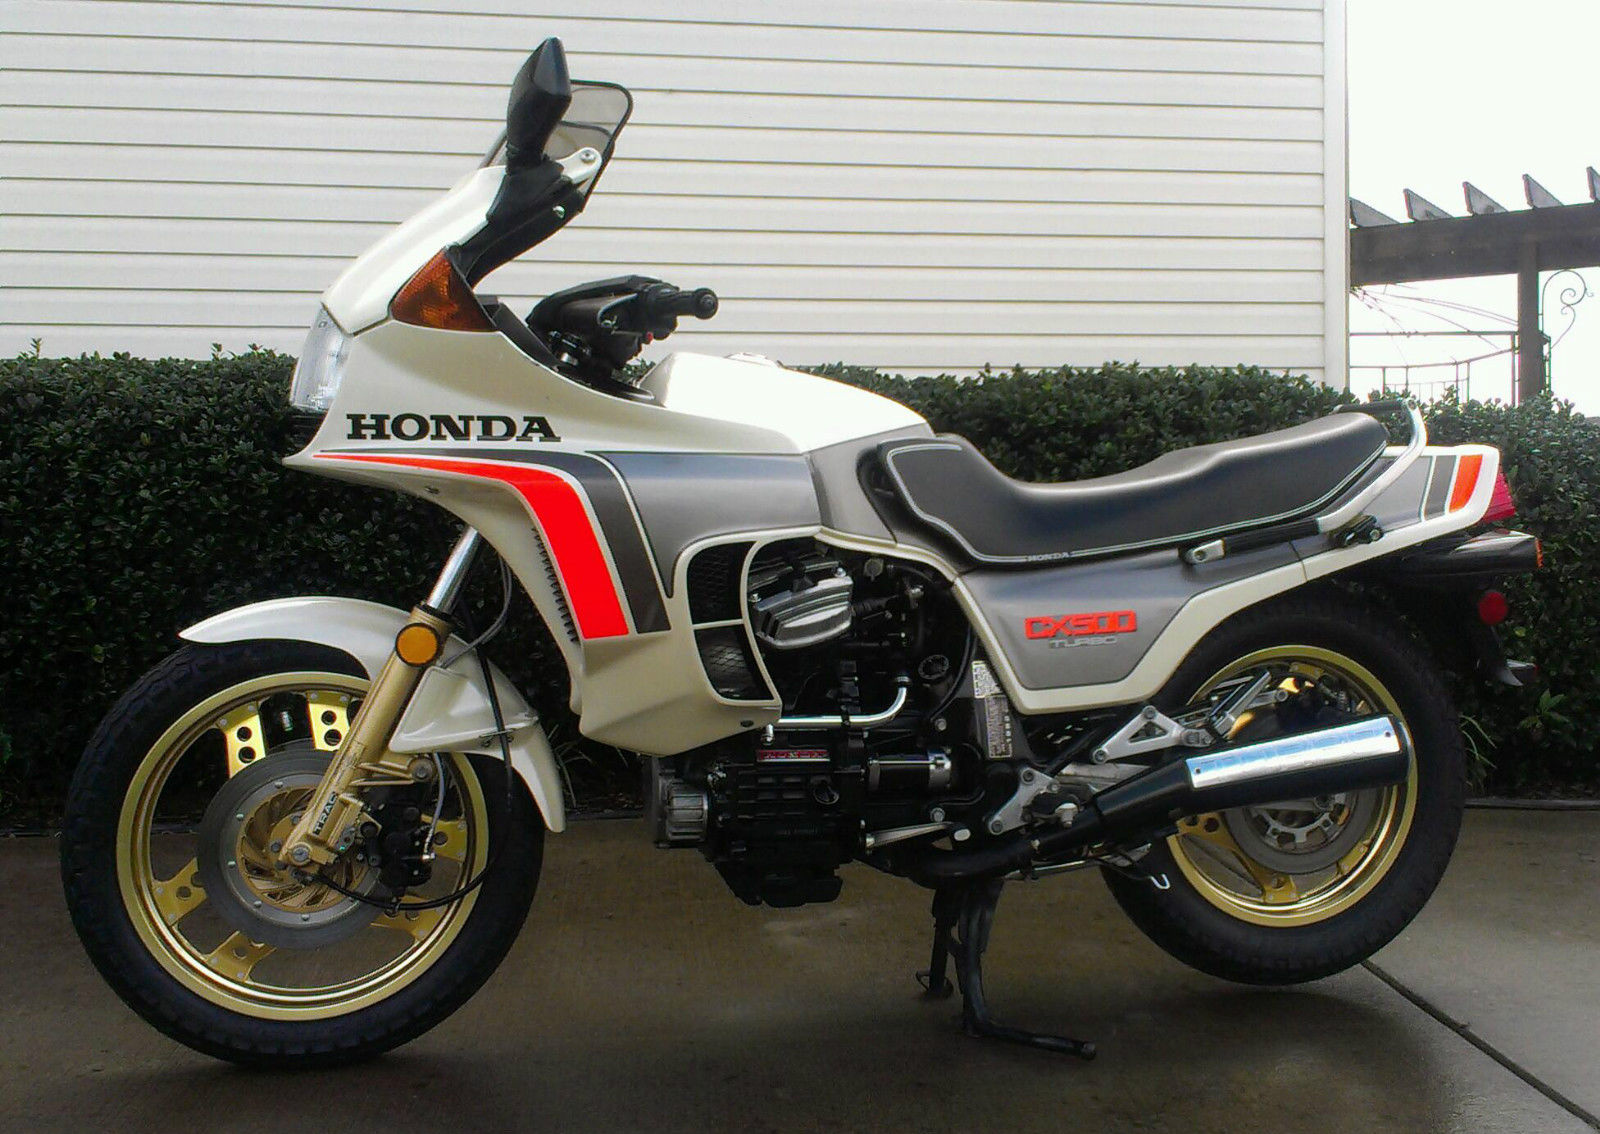 Honda produced turbo #7